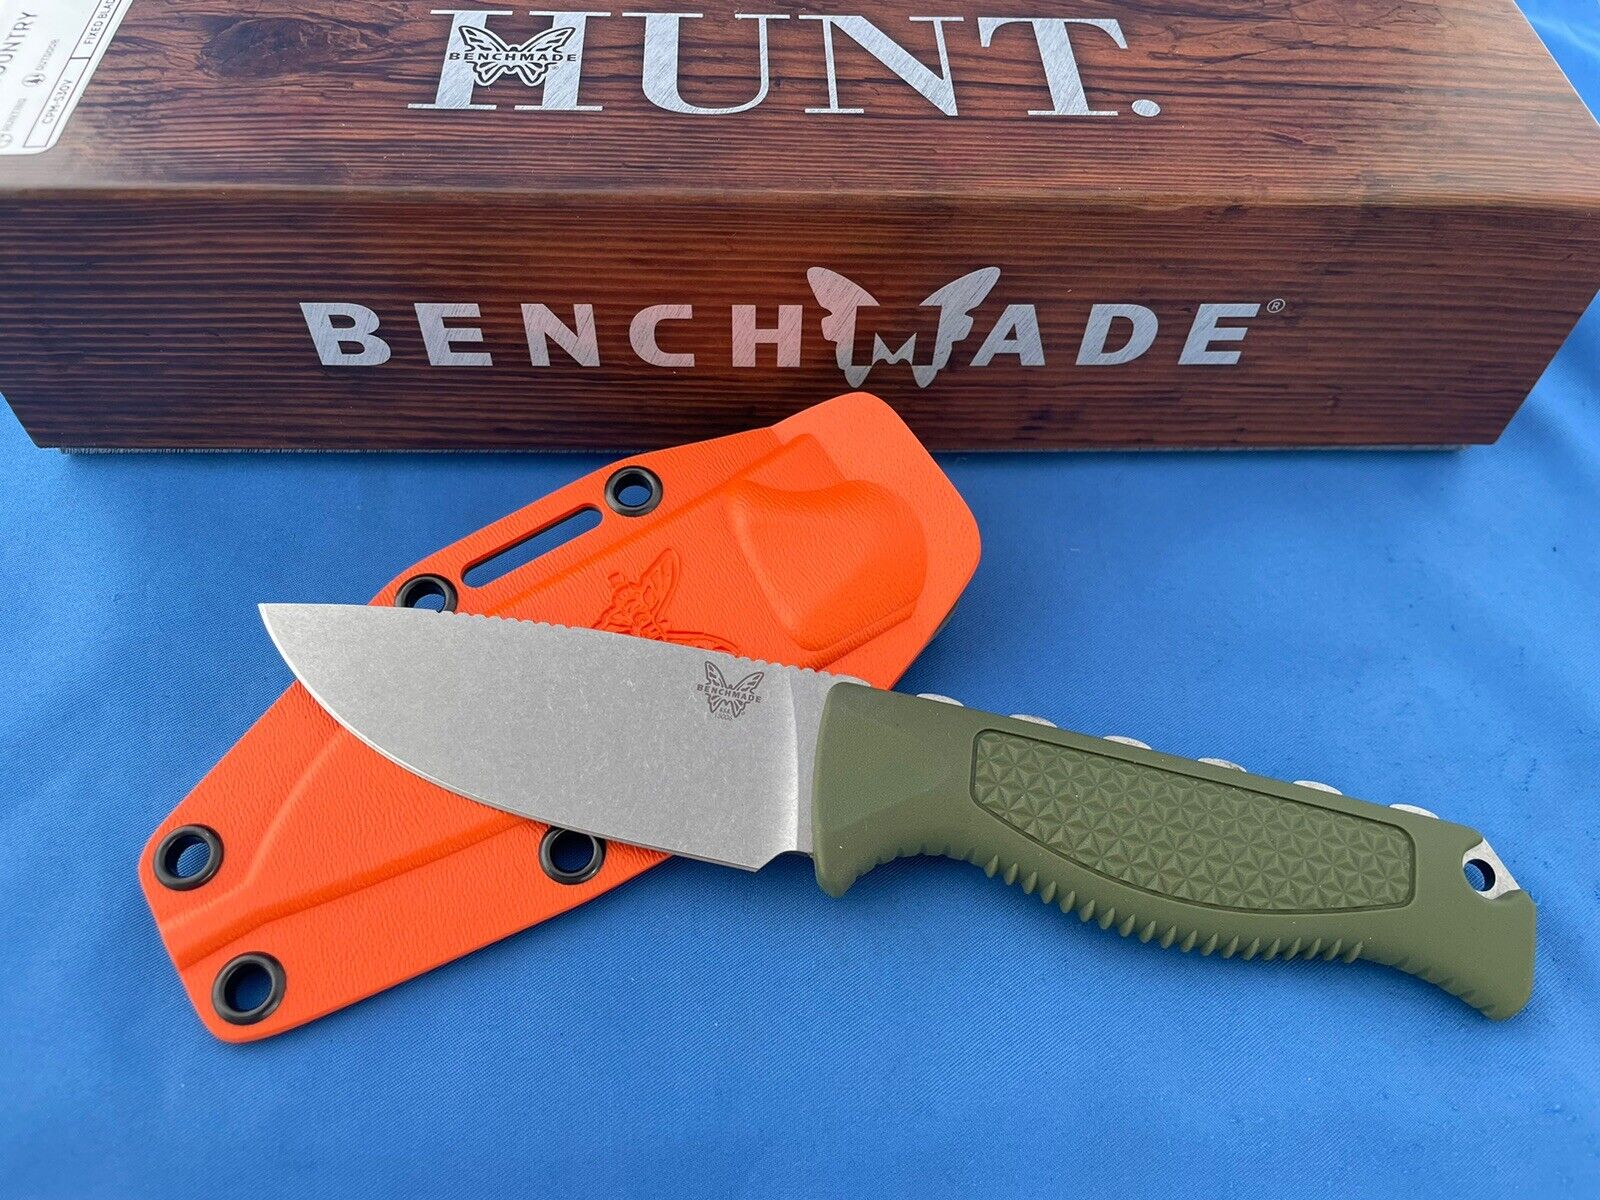 Benchmade 15006-01 Steep Country Knife Olive Green Santoprene S30V Stainless